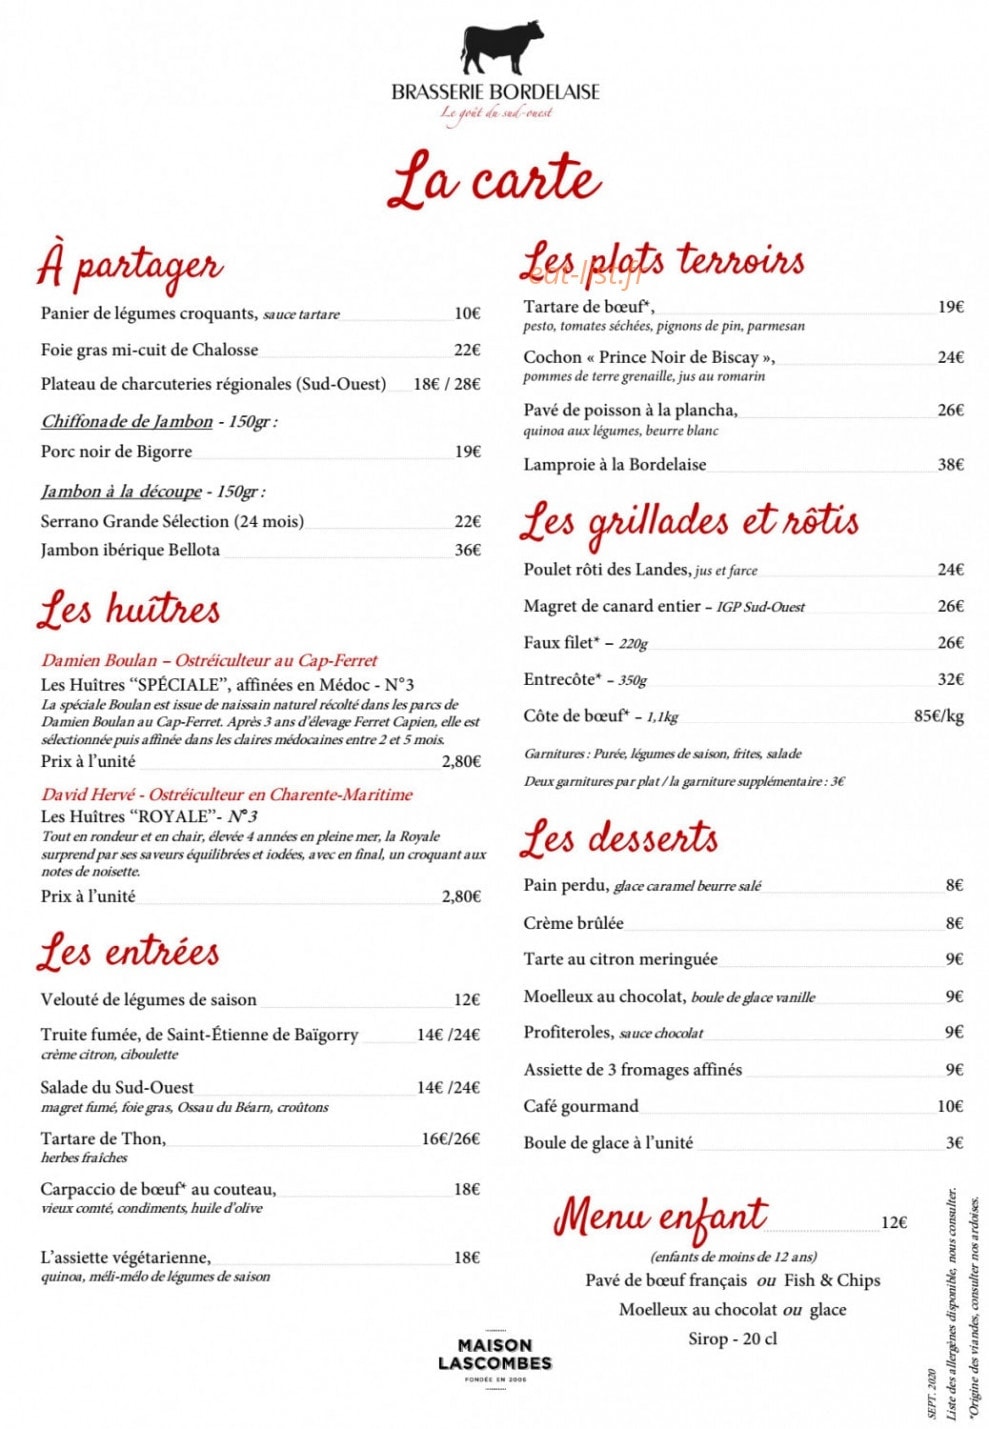 Carte Restaurant Menu Du 31 12 12 Par Charles Fichier Pdf - Rezfoods ...